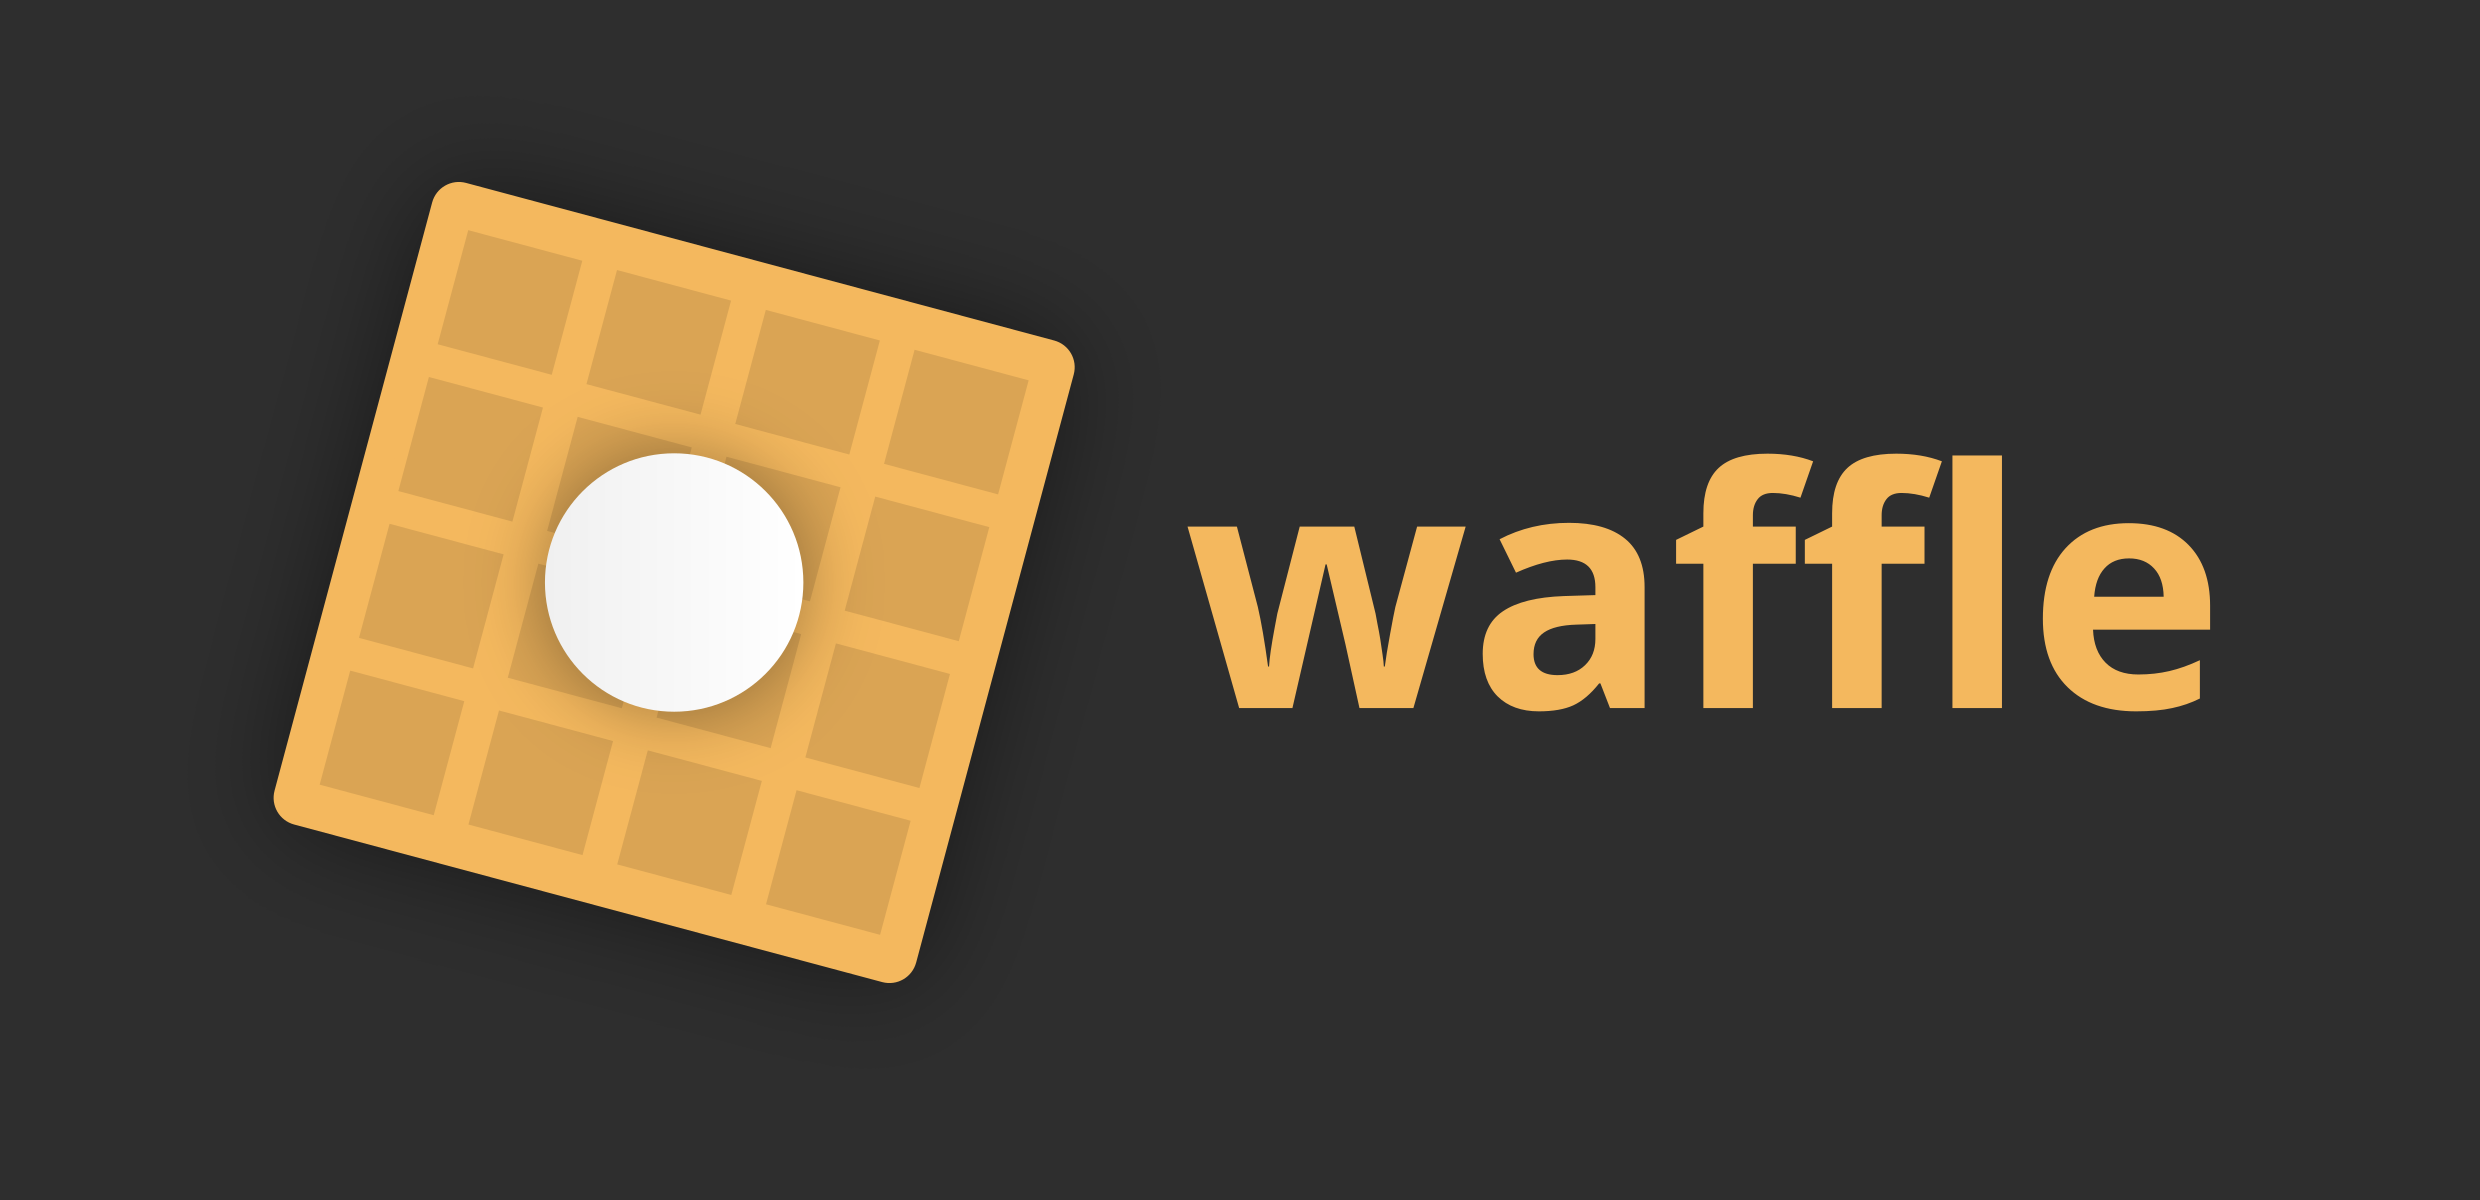 Rectangular waffle icon